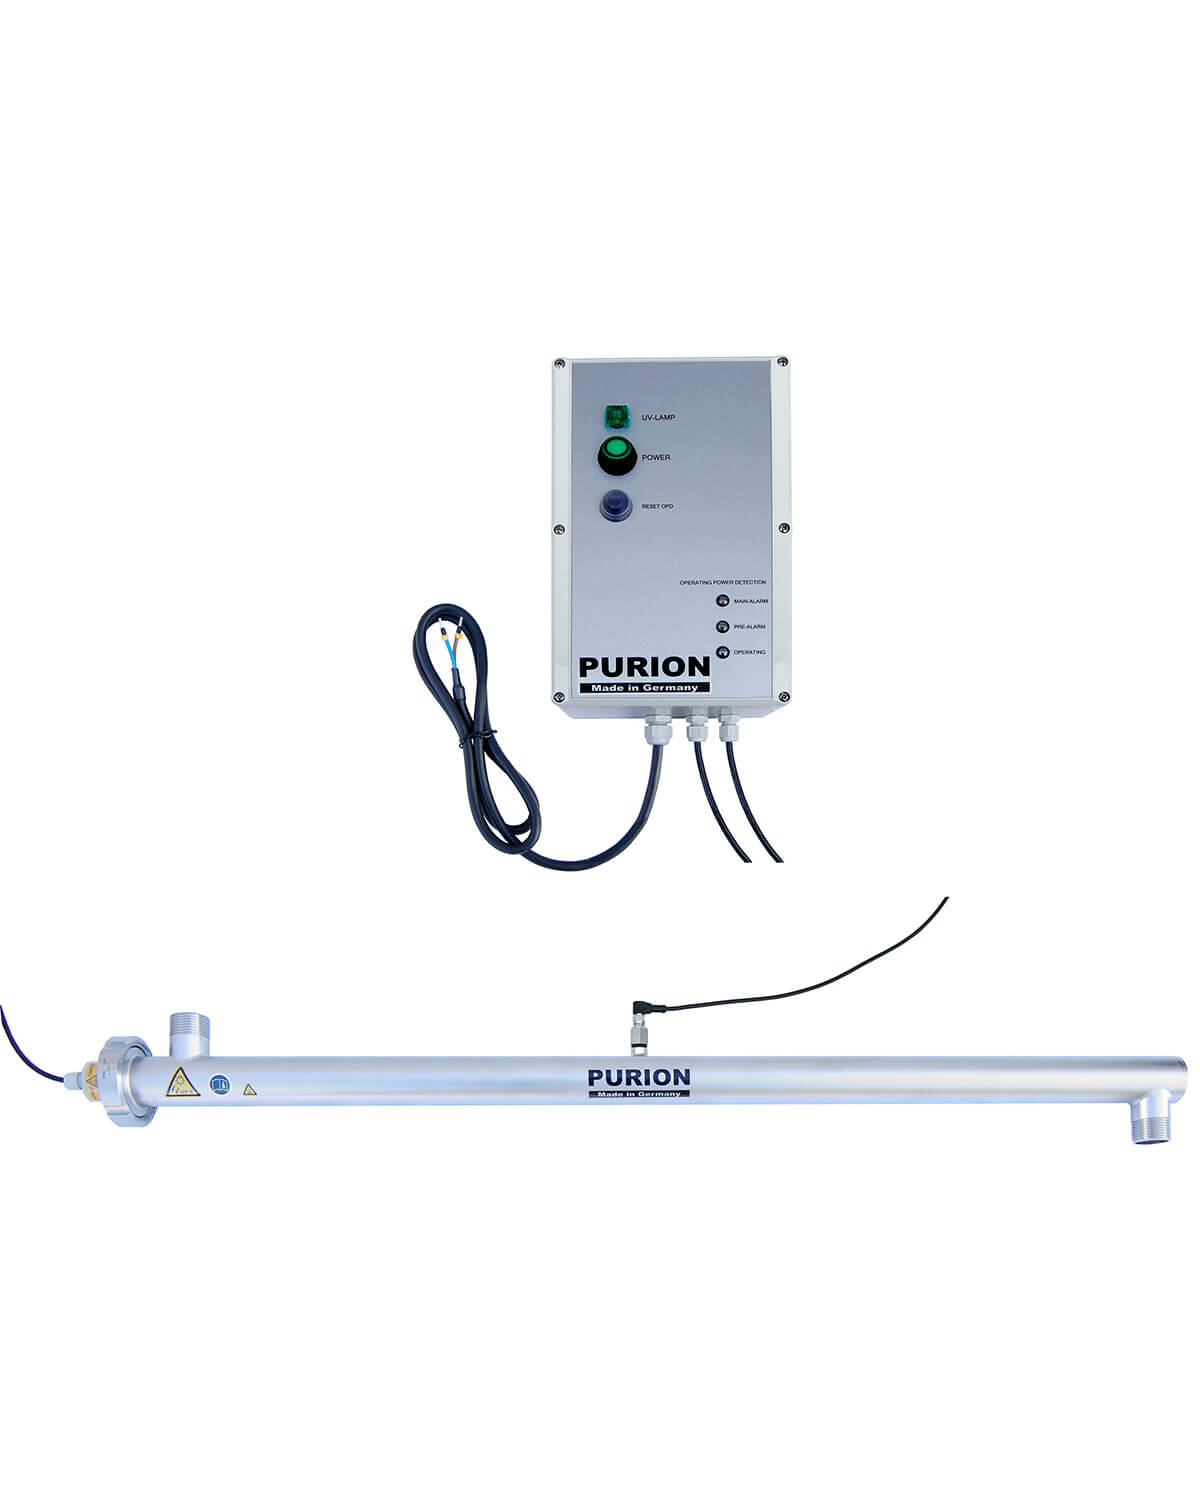 Ein PURION 2500 36 W 24 V DC OPD-Warmwasserbereiter mit angeschlossenem Kabel und integrierter UV-C-Desinfektionsanlage zur Trinkwasserreinigung.